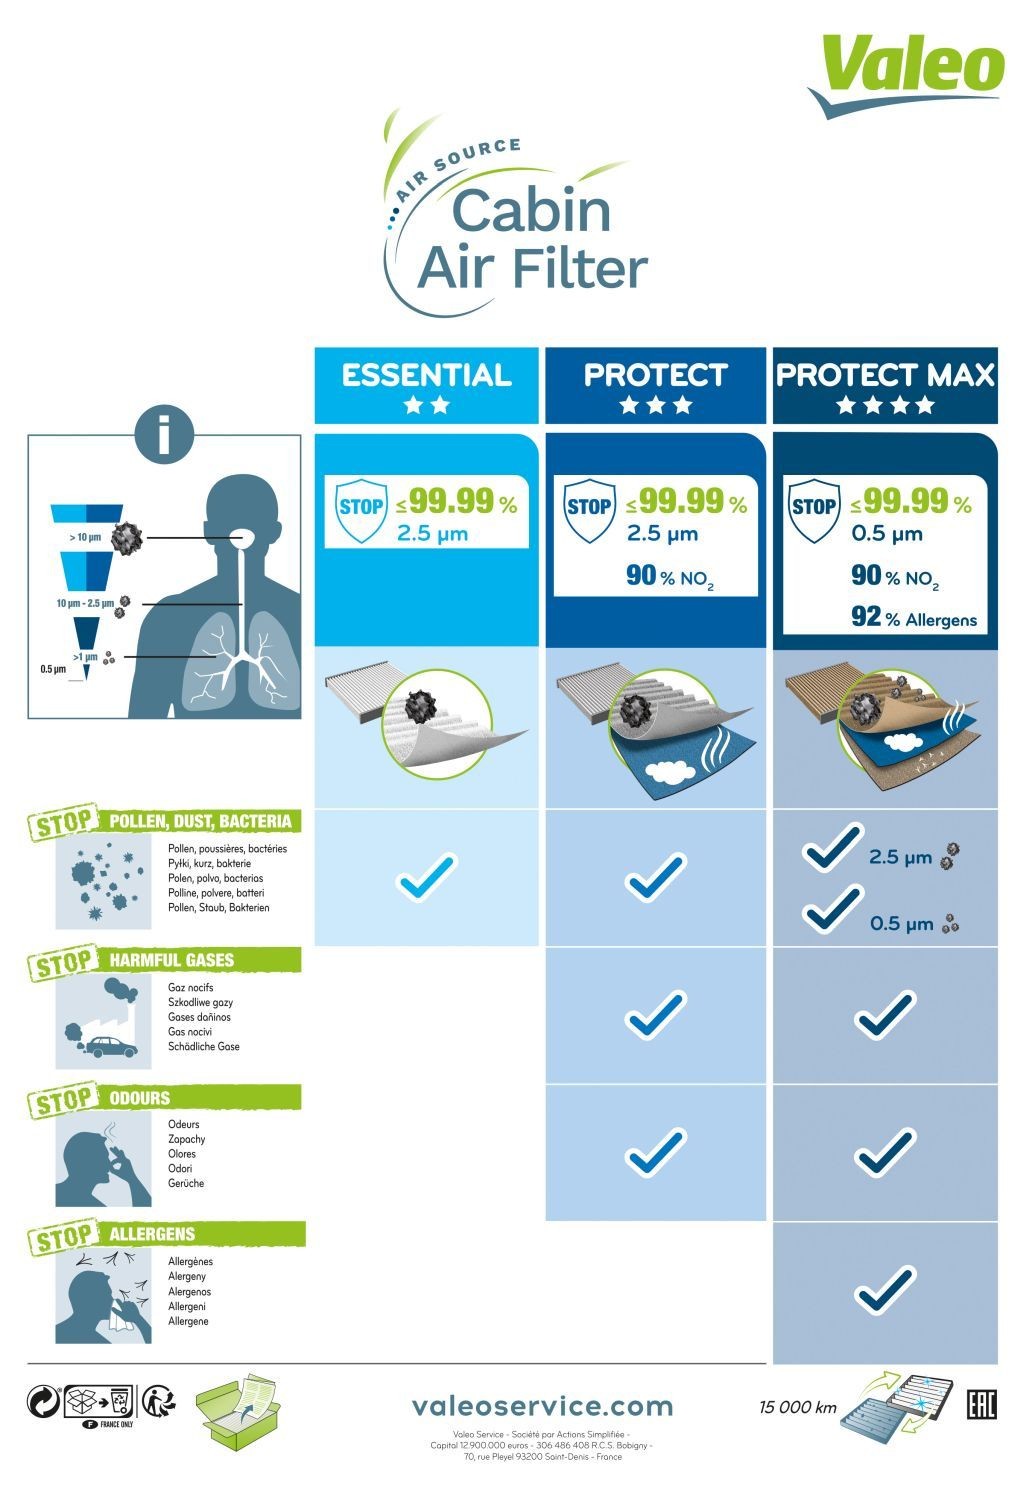 VALEO Air conditioning filter 701014